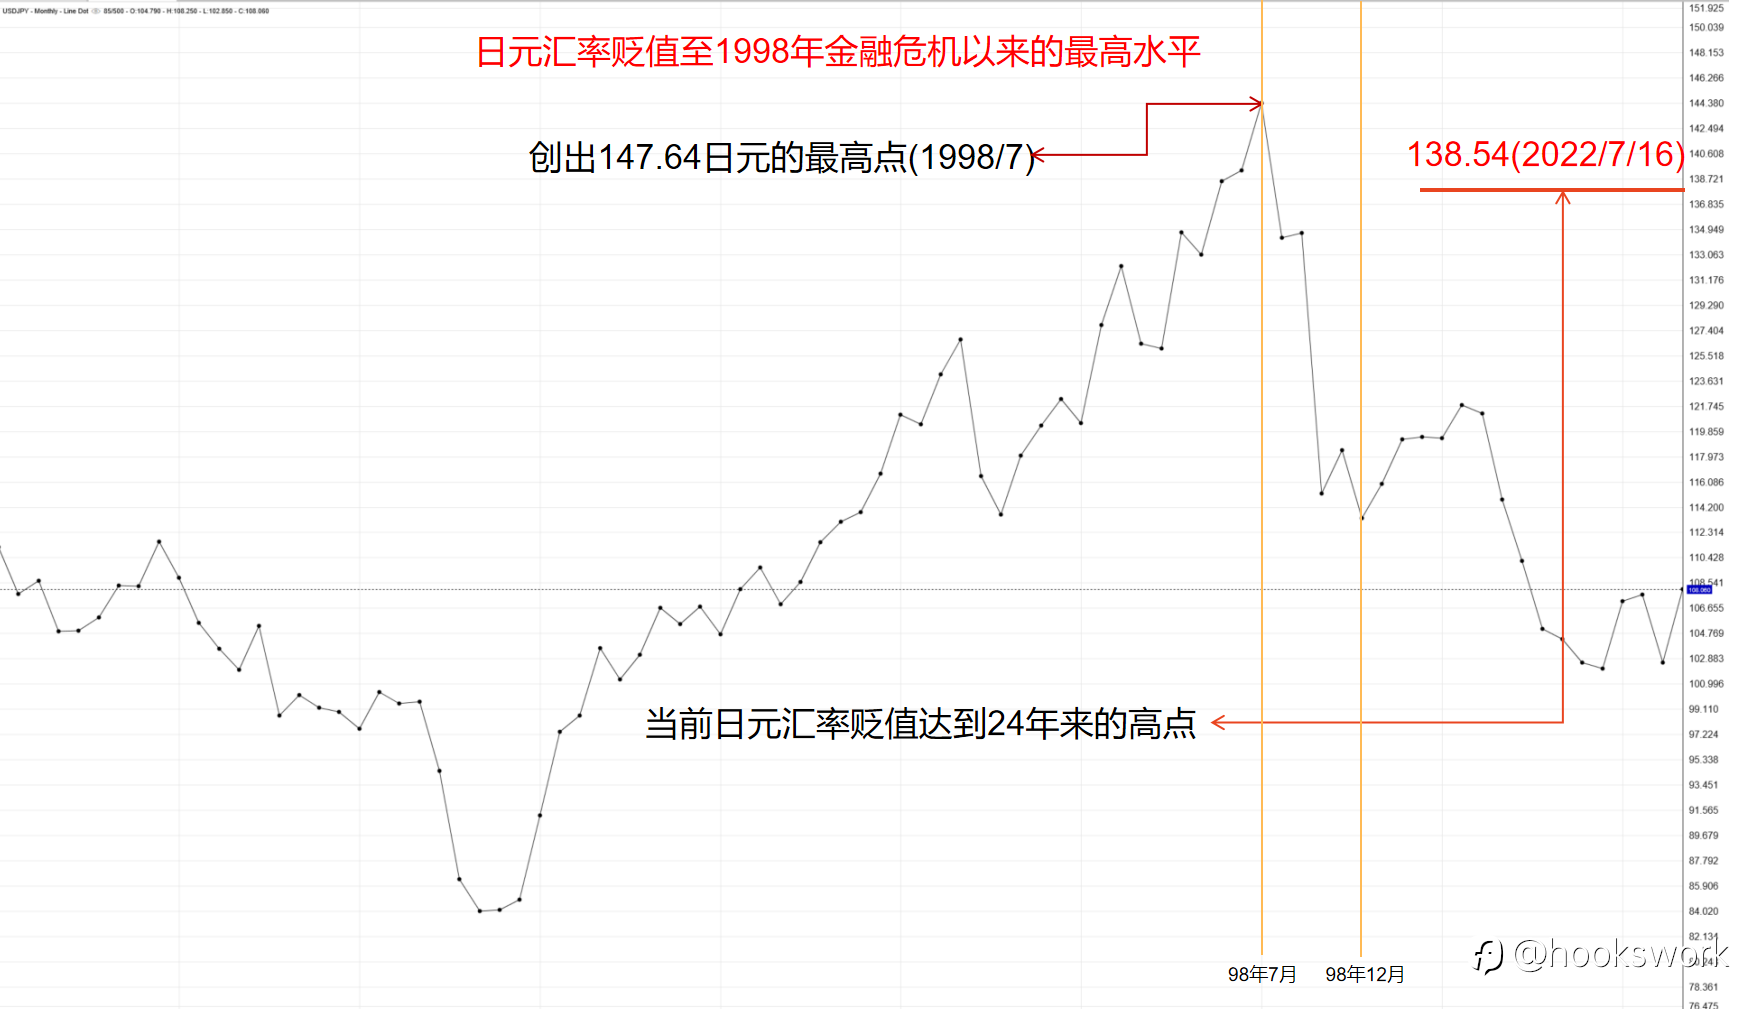 日元贬值的危机与机遇